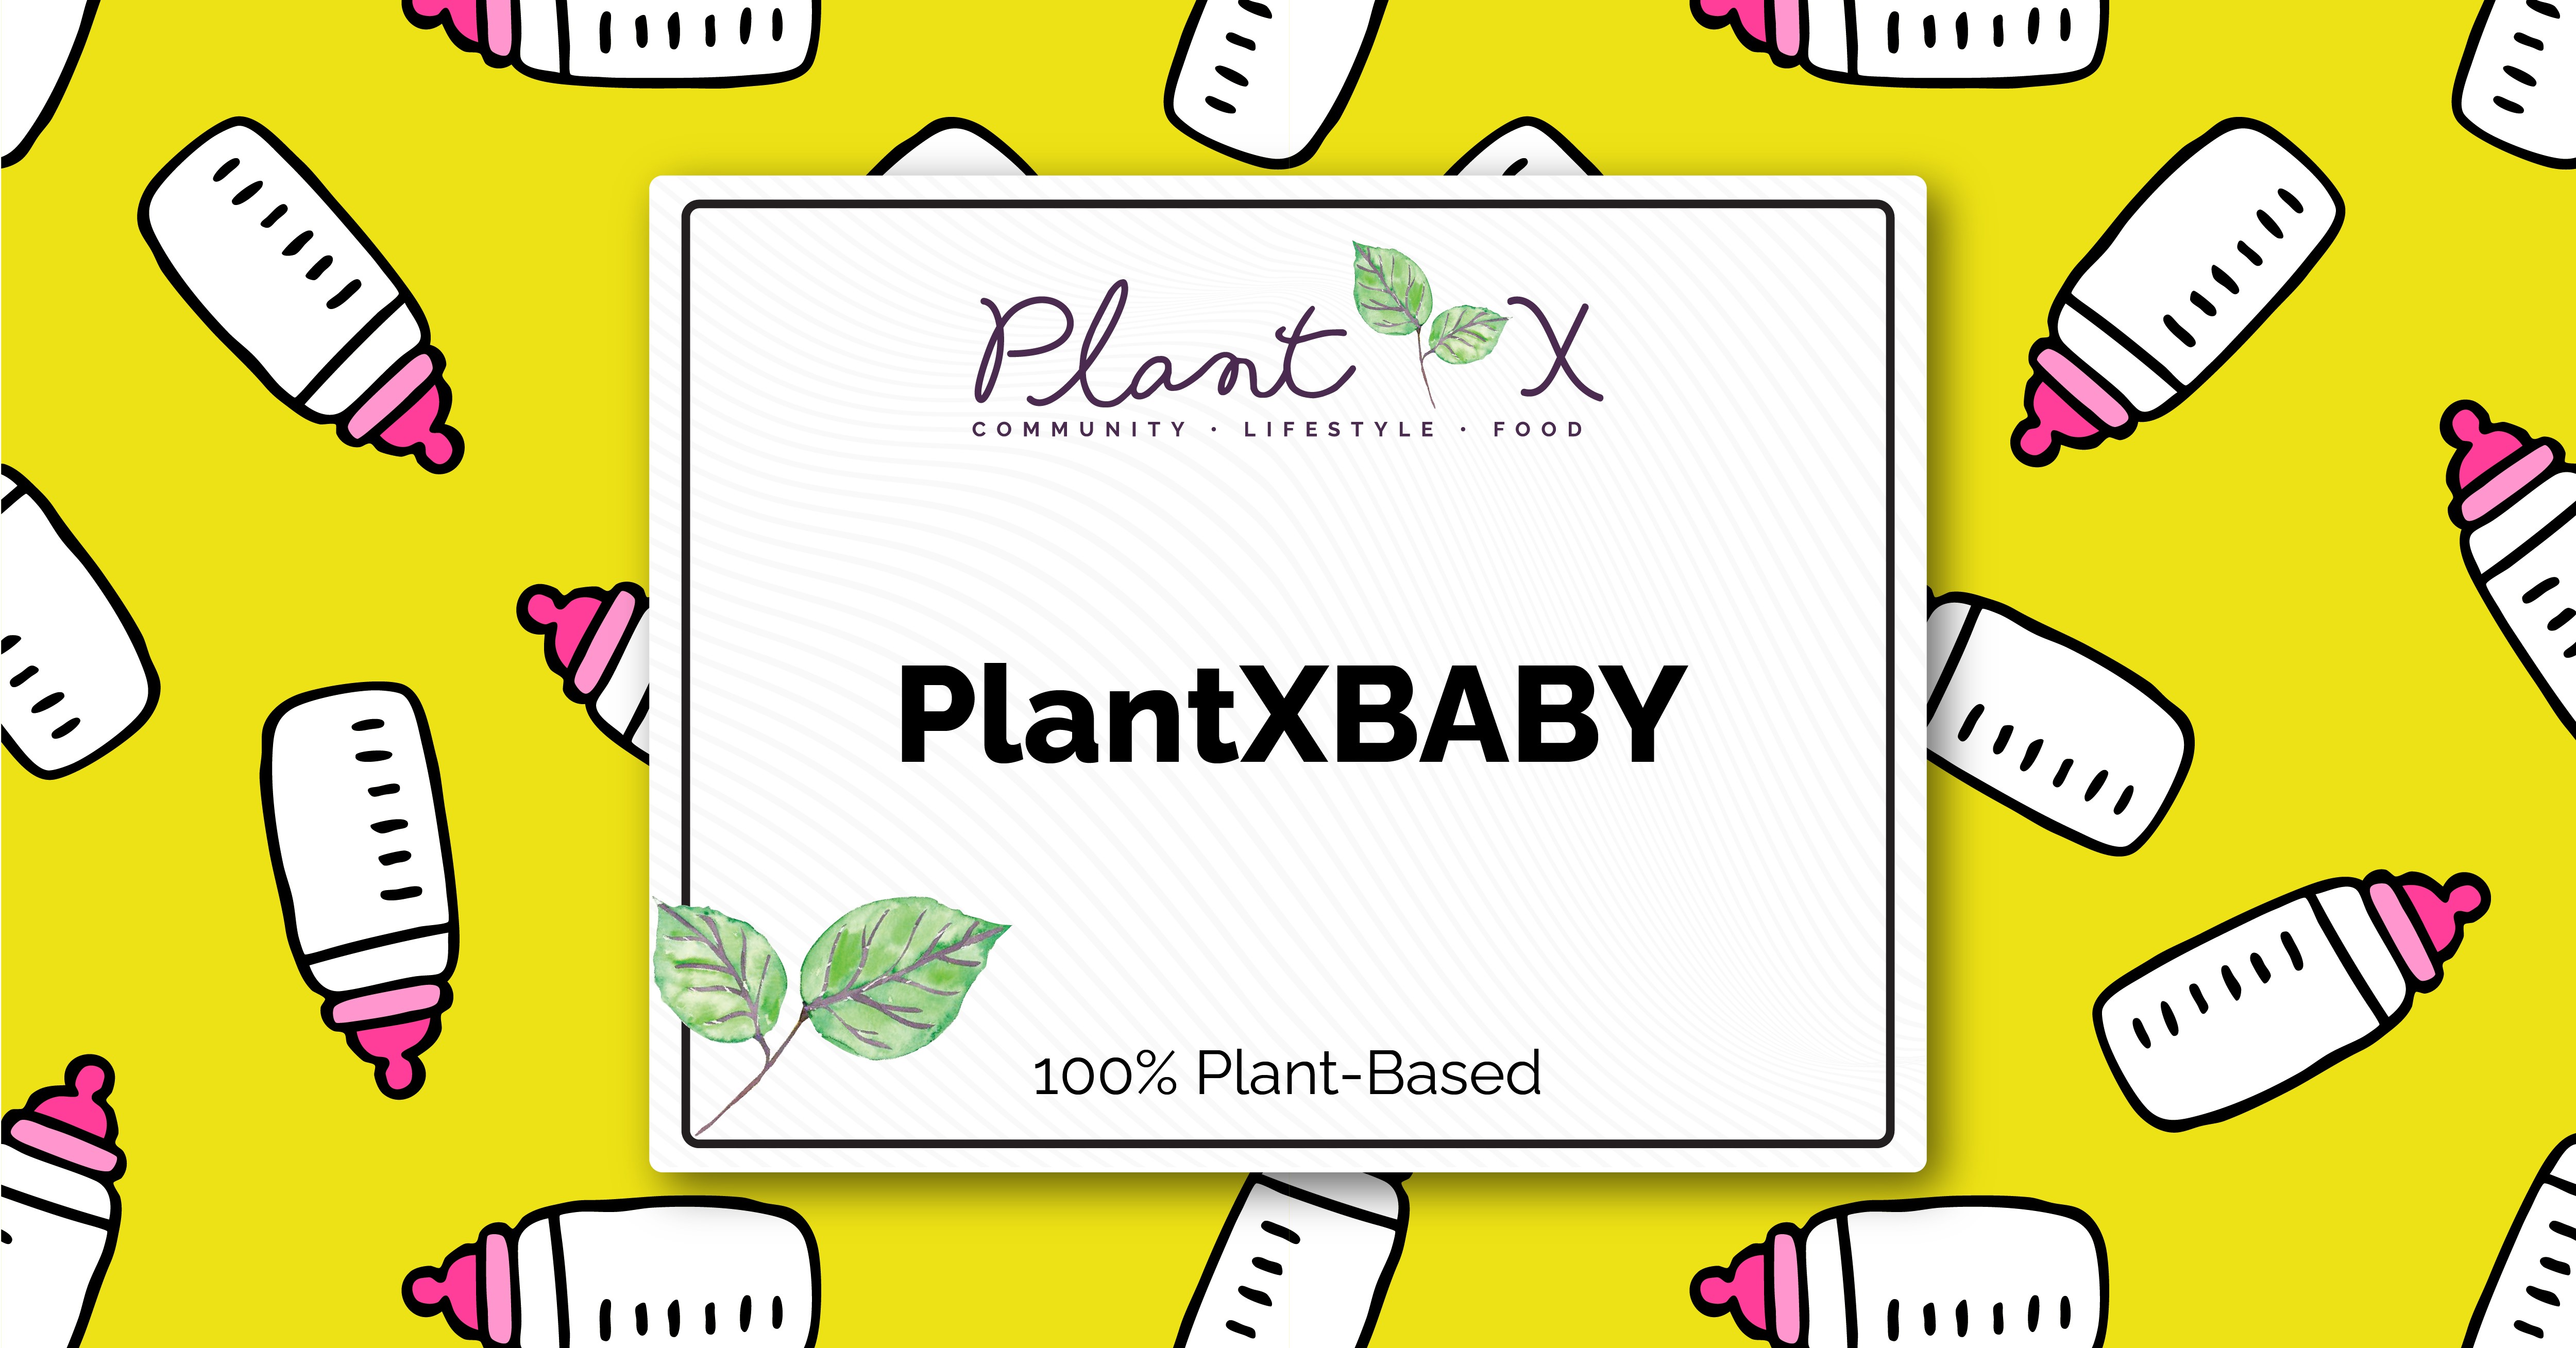 PlantXBABY logo.jpg